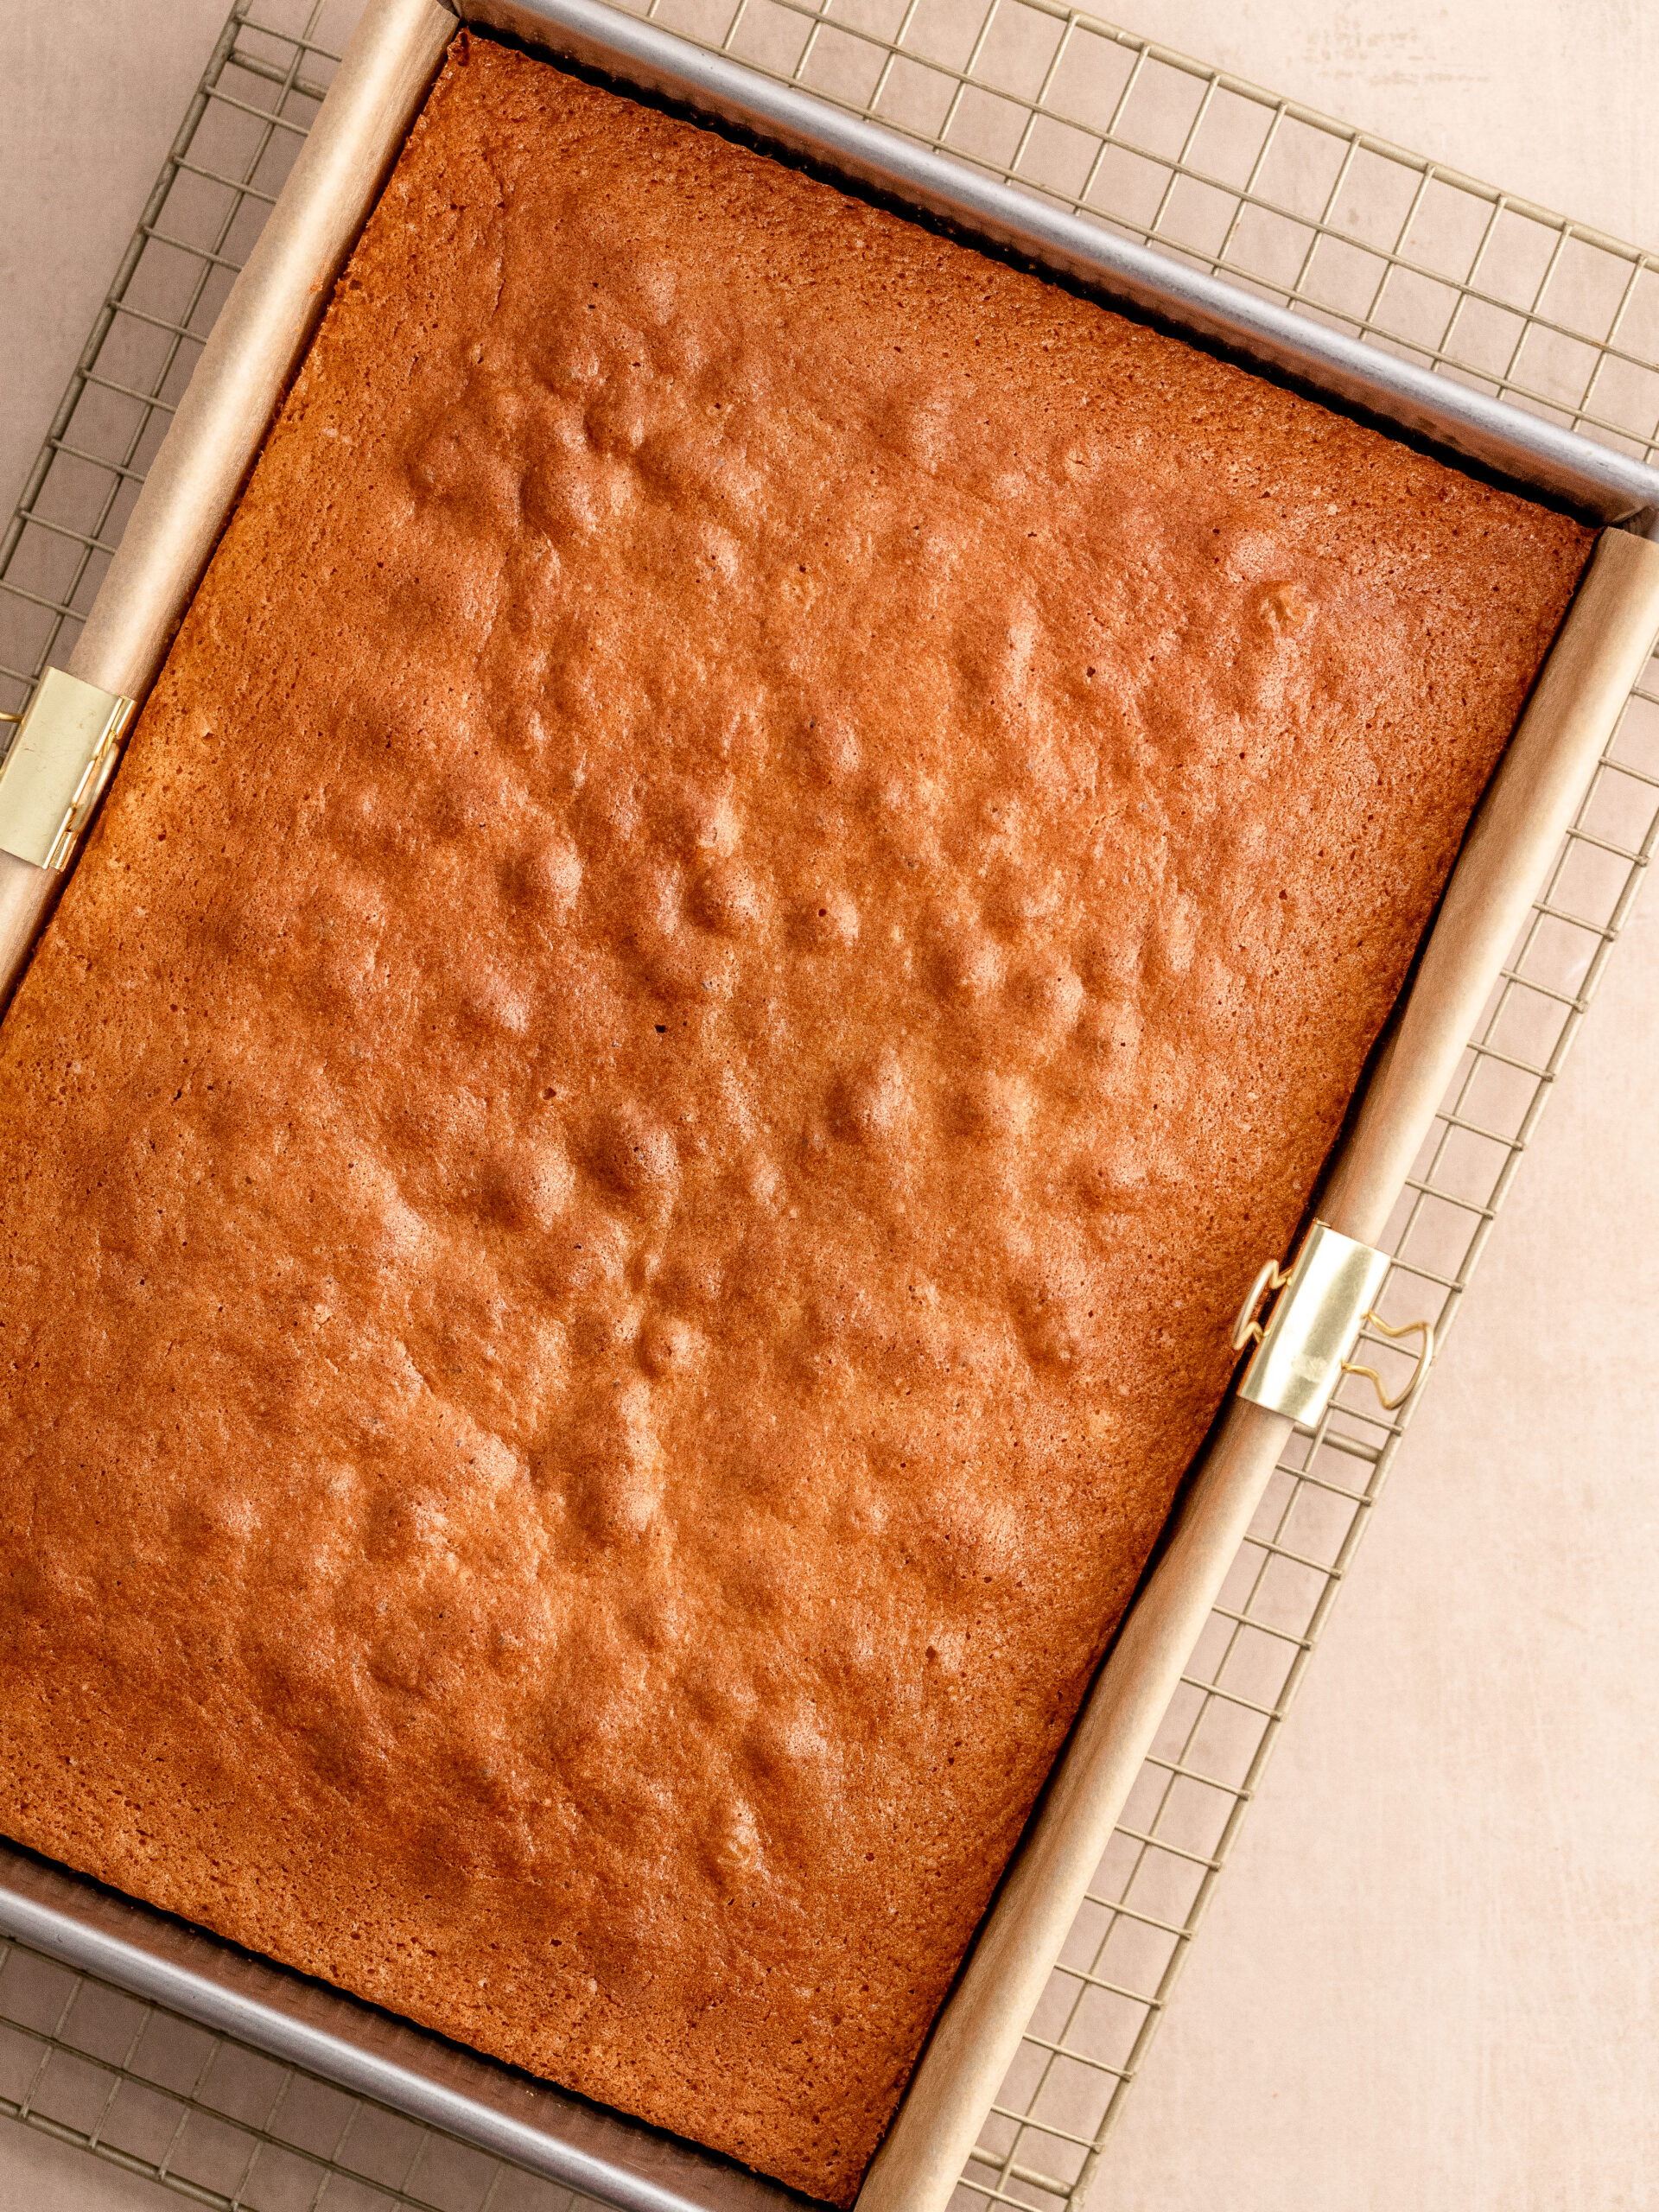 Trin 3: Lad den bagte kage køle af på en rist.